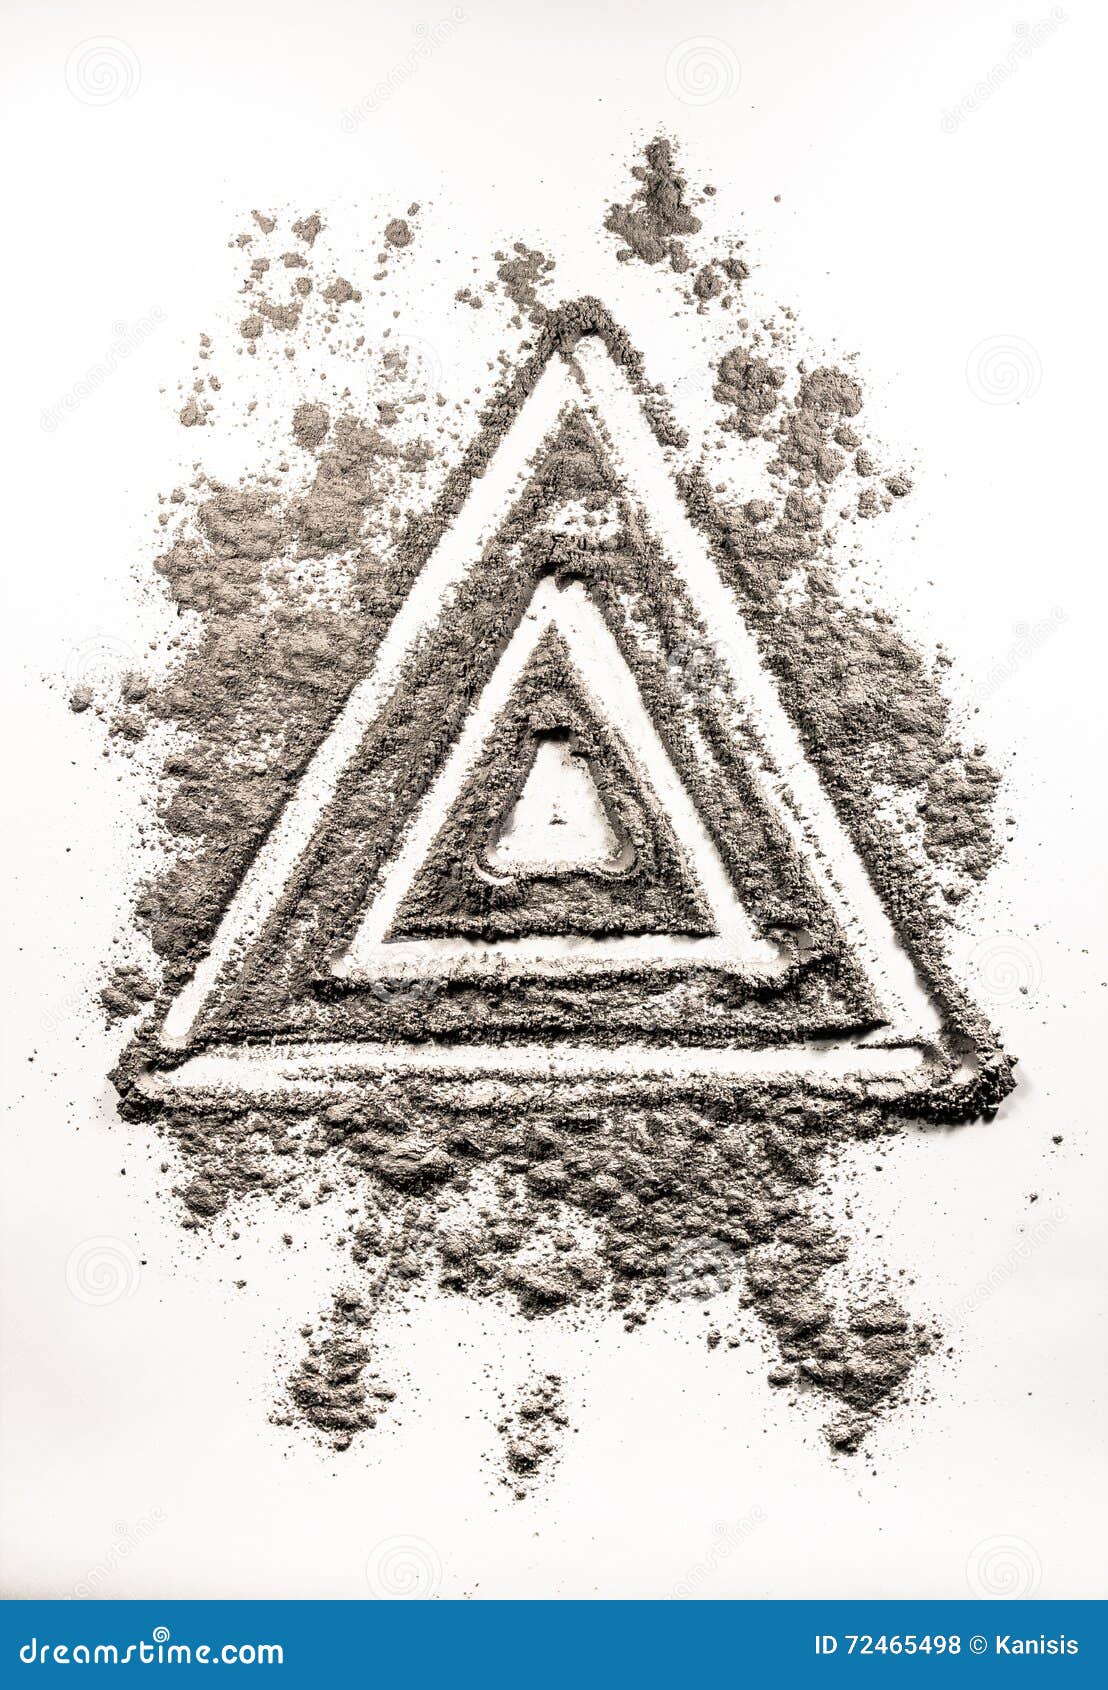 dust symbol